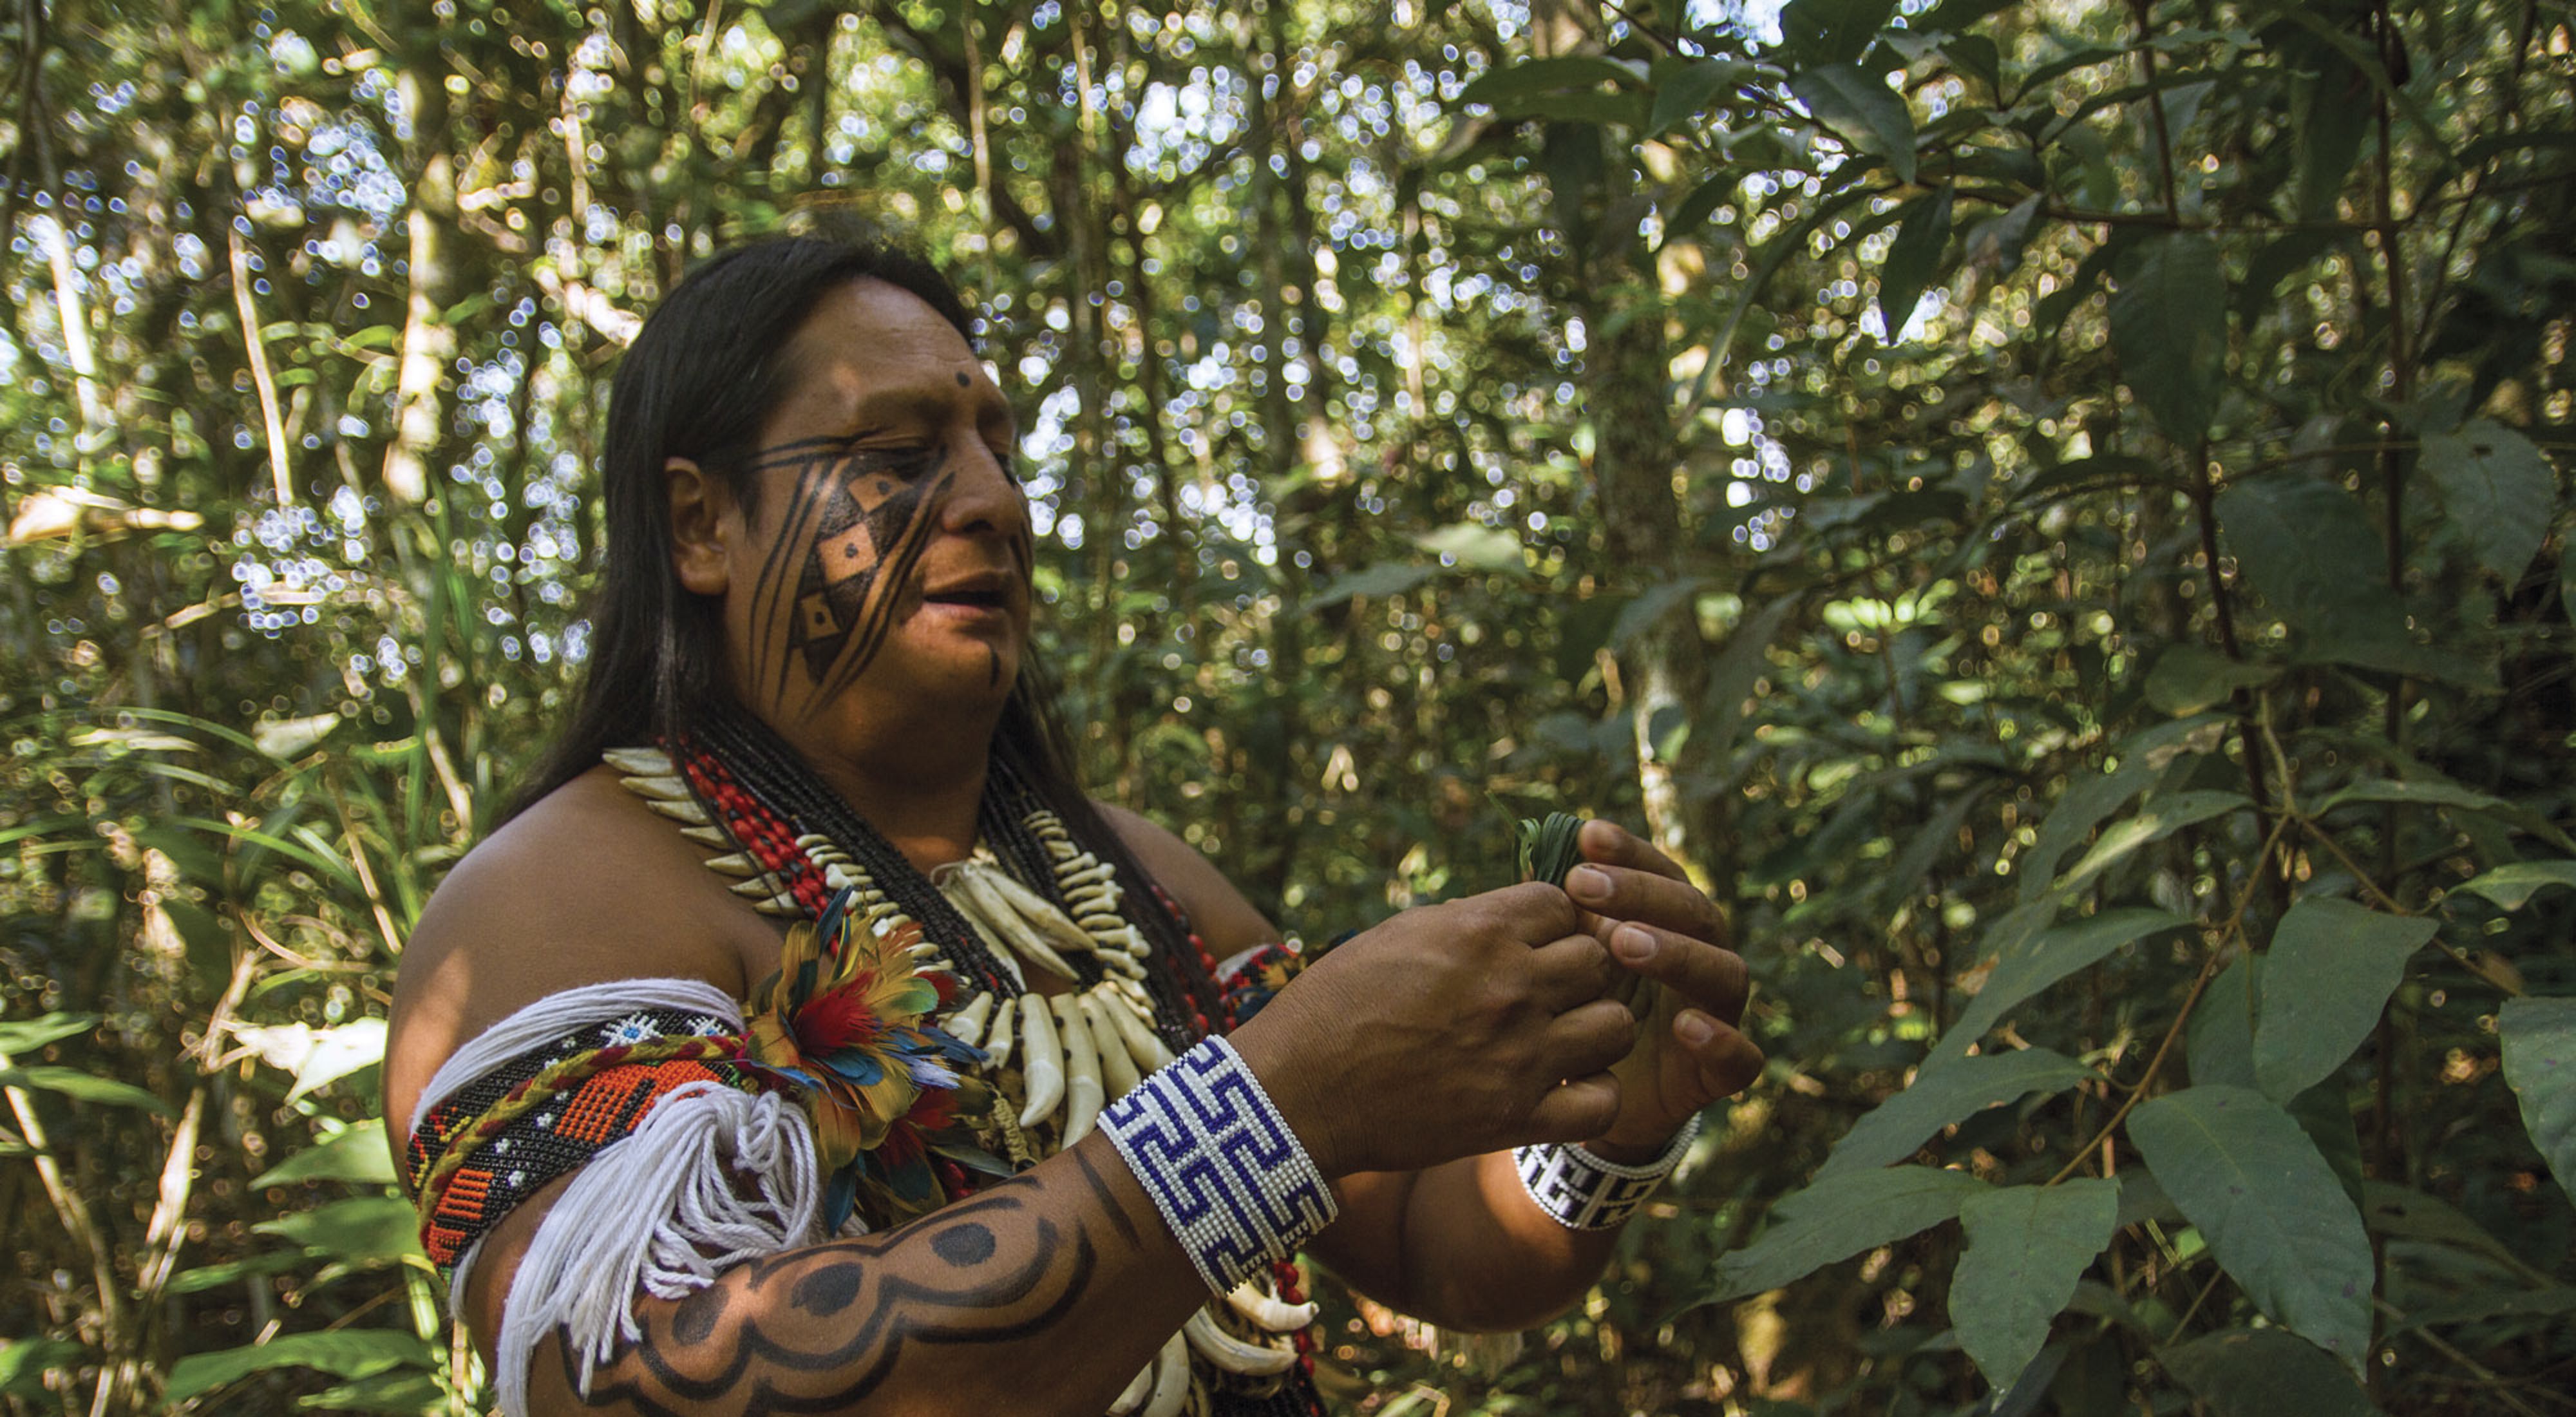 El Jefe de la aldea Wazare, Rony Paresi, es parte del grupo indígena paresi en el Mato Grosso do Sul, Brasil. TNC apoya al grupo paresi en el desarrollo de proyectos turístico